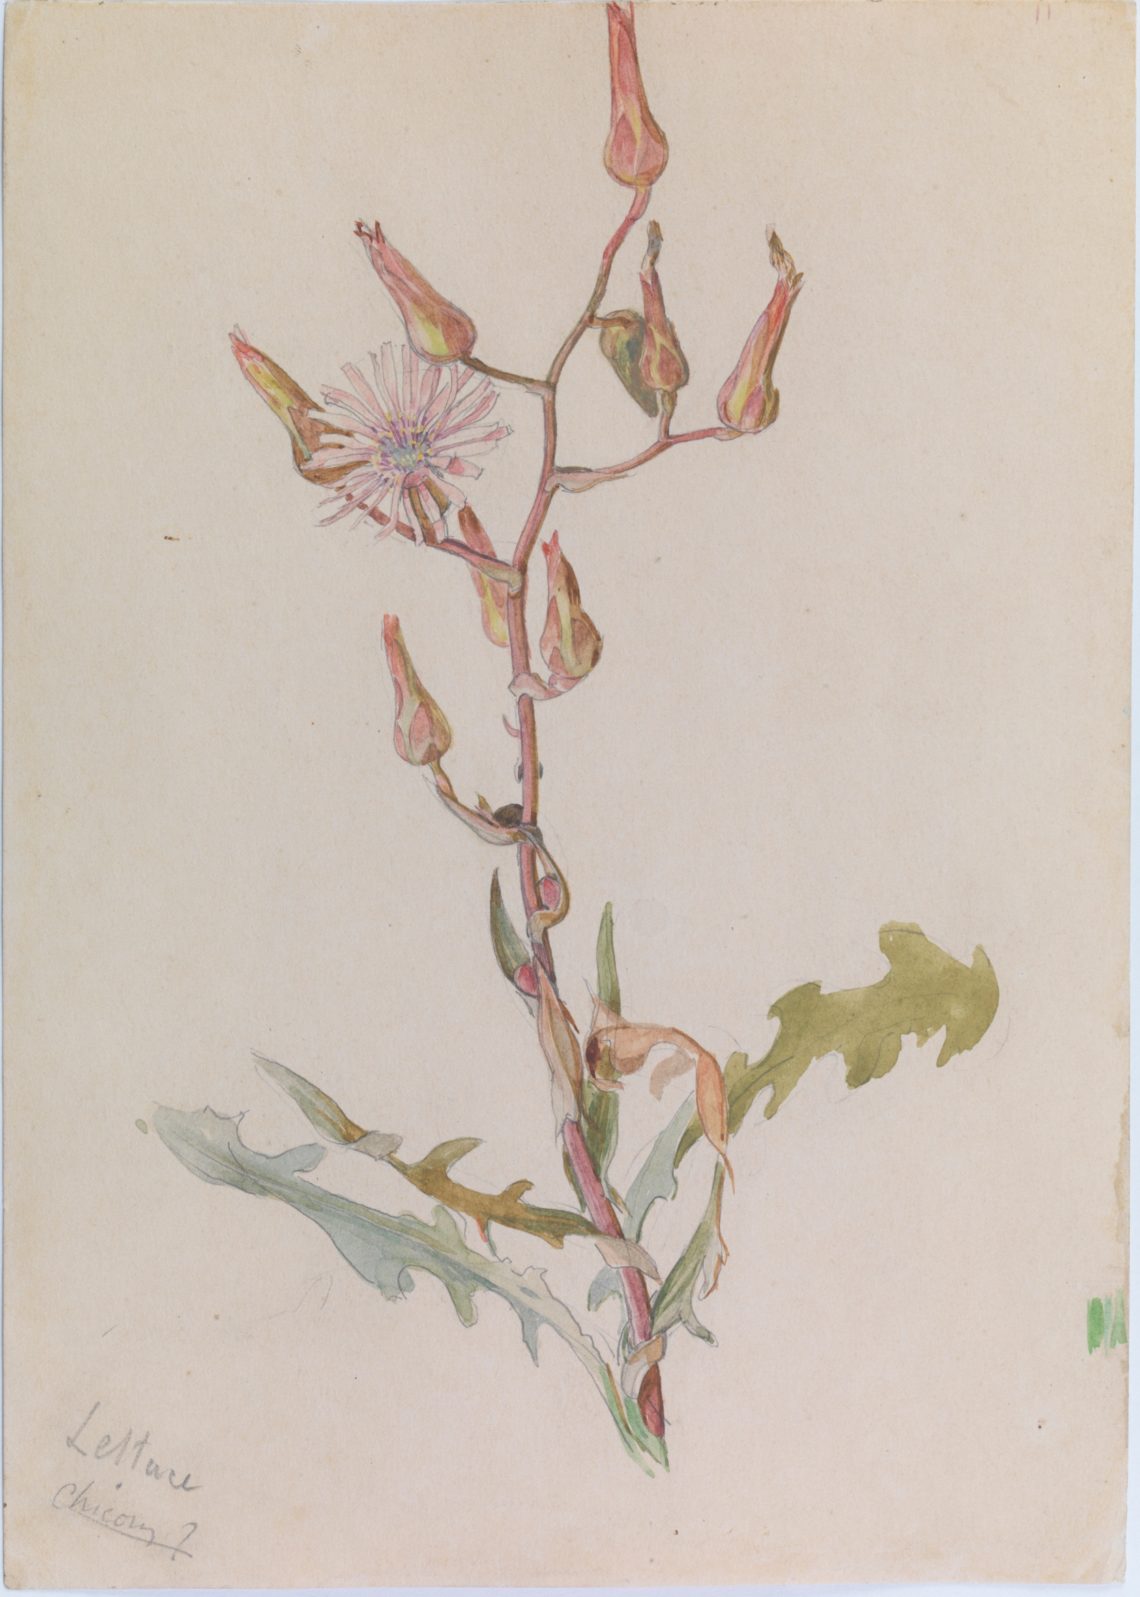 Henry_Lamb_Lettuce-Chicory-C18, 24.3 x 17.3 cm